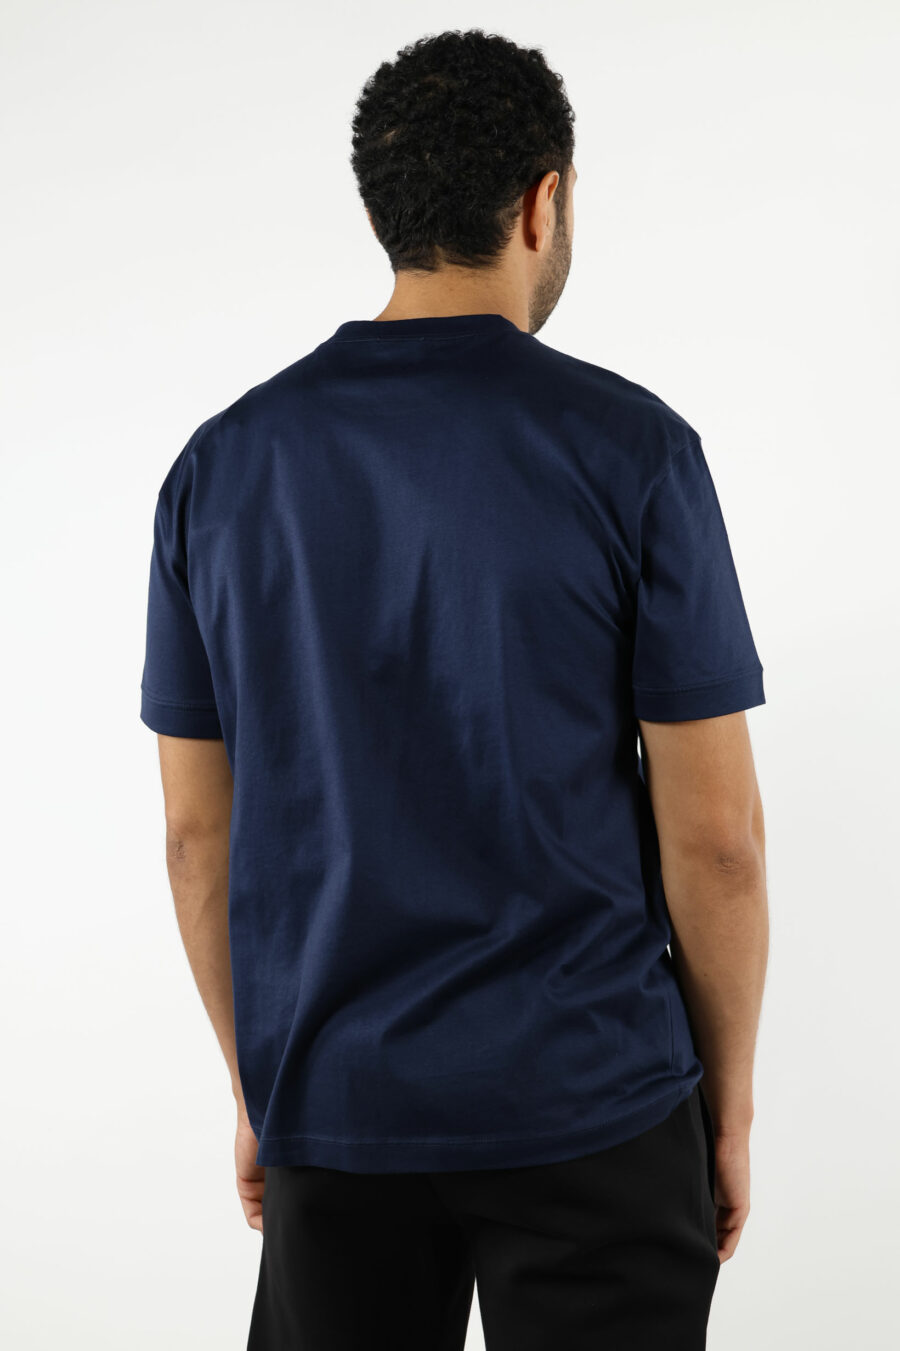 T-shirt bleu foncé avec maxilogo "lux identity" dans un carré vert - 110948